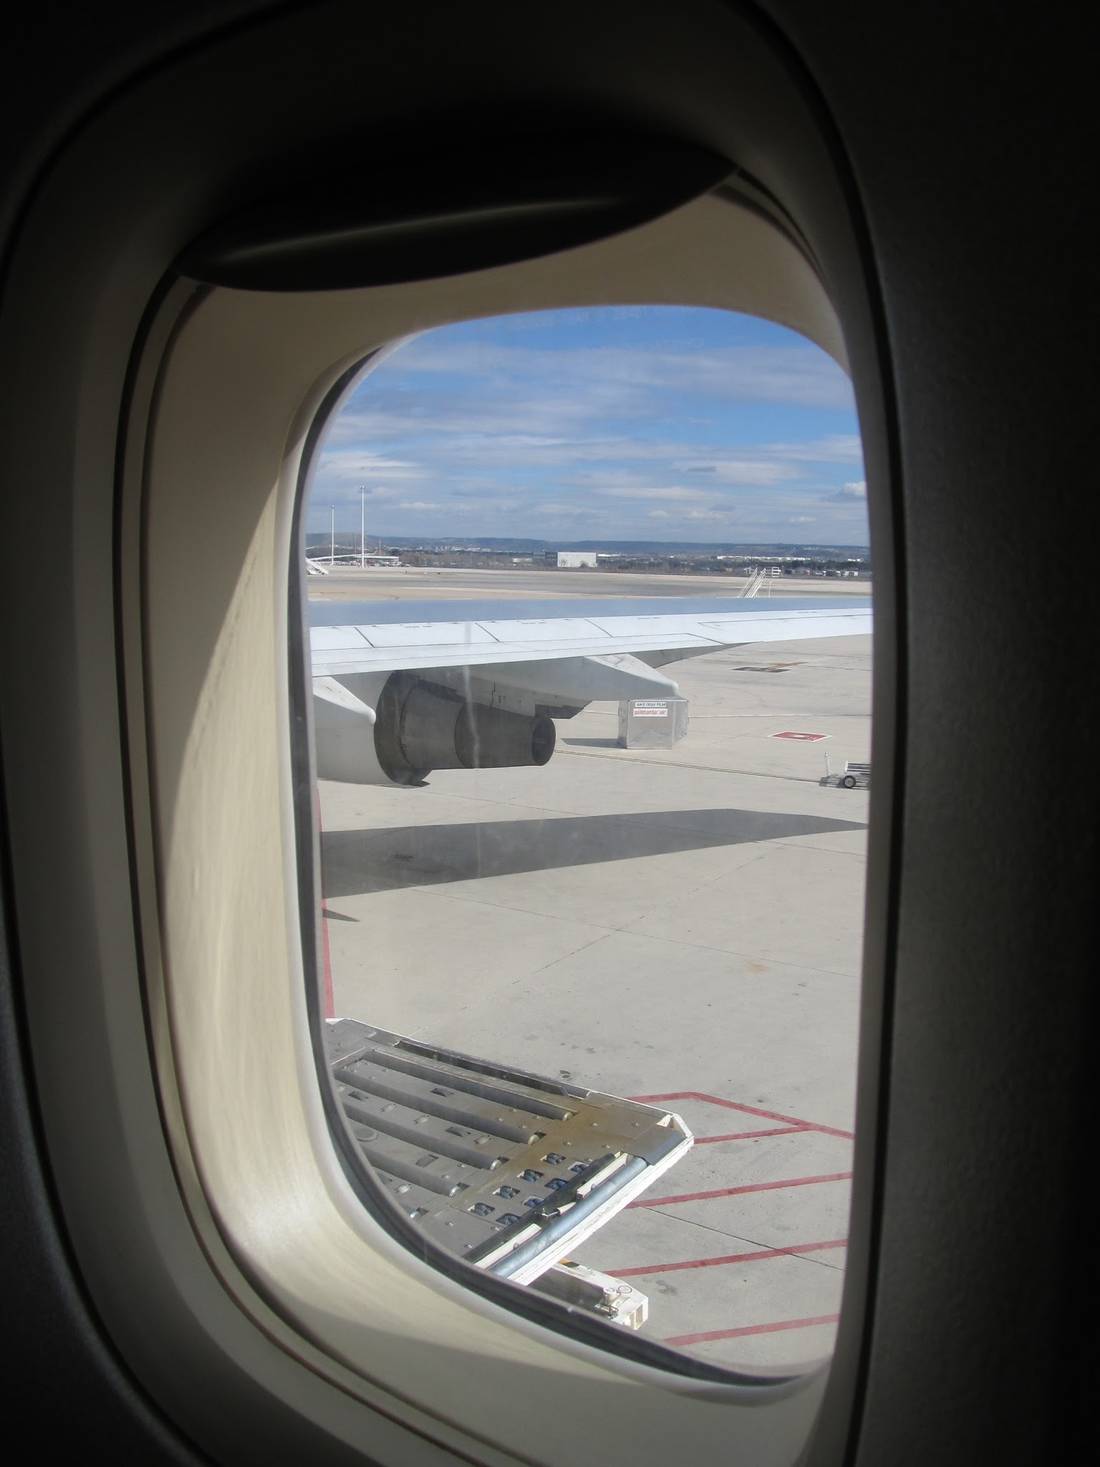 Widok z okienka samolotu przed startem